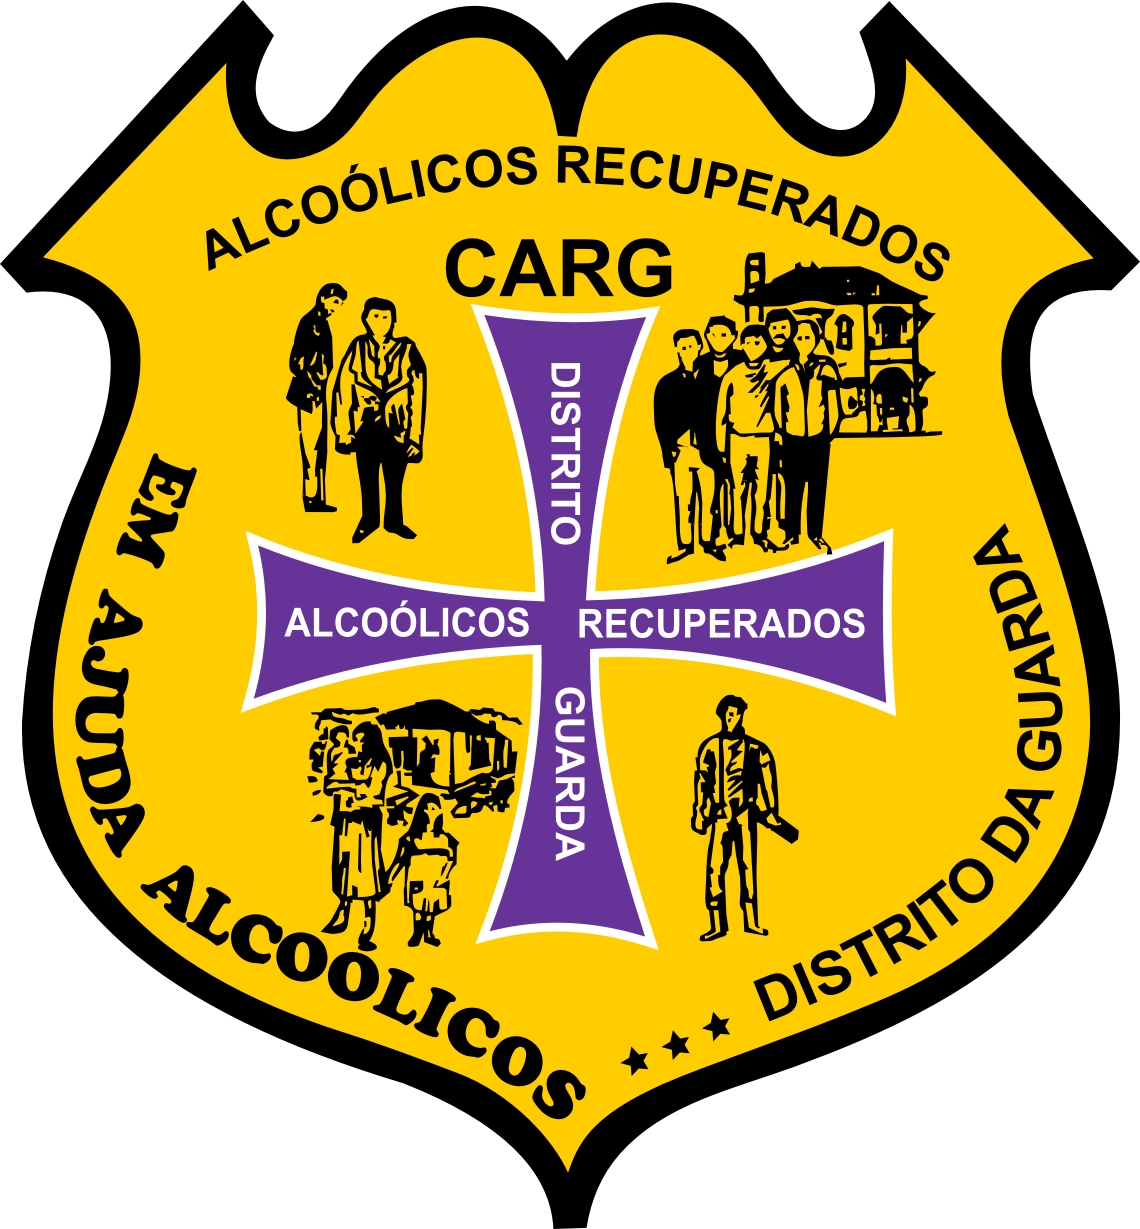 Protocolo entre Núcleo regional da Guarda e Centro de Alcoólicos recuperados do distrito da Guarda (CARG)